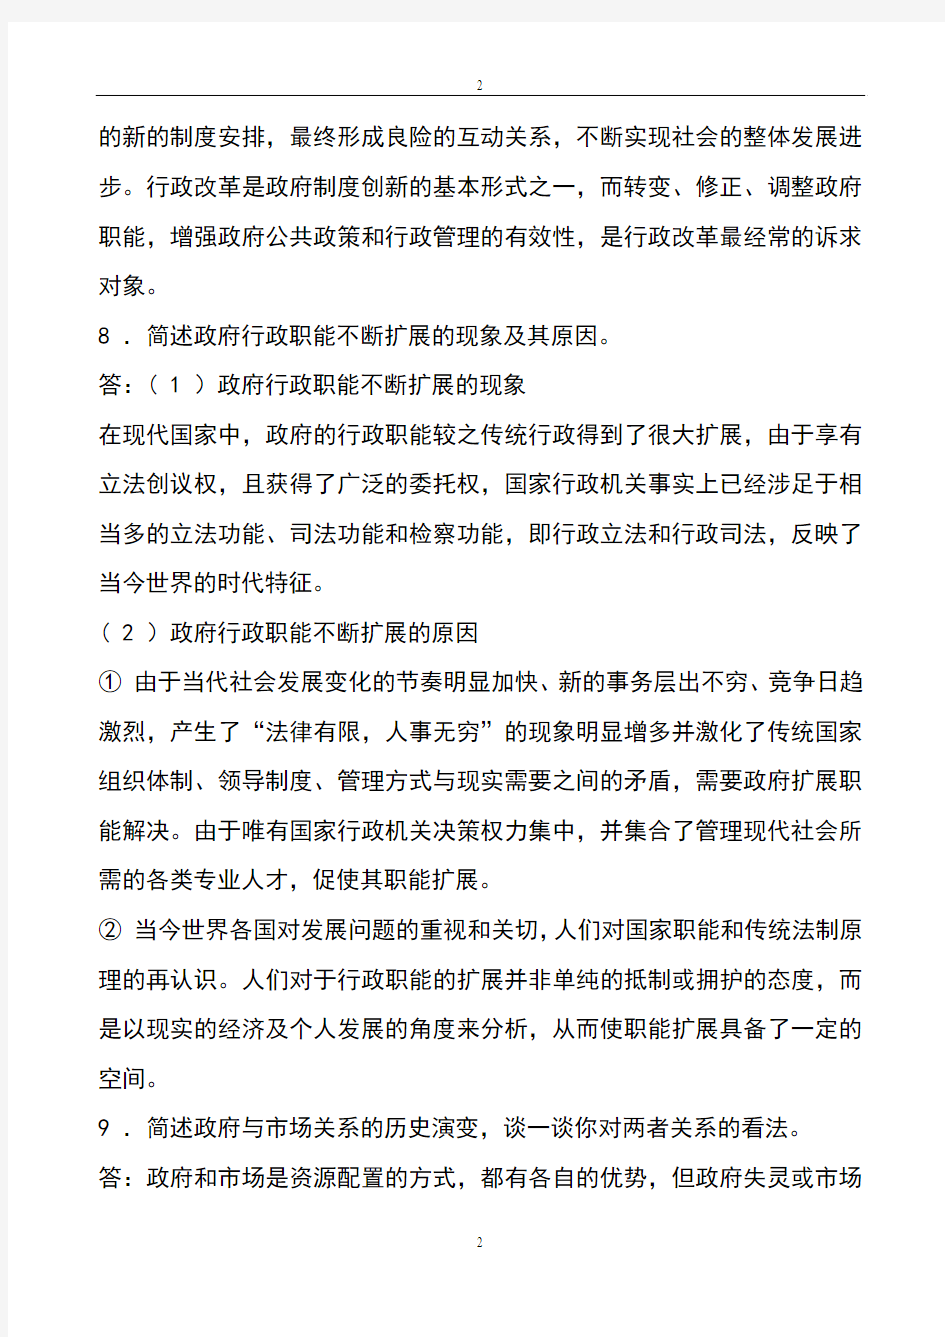 张国庆公共行政学(第三版)课后习题讲解第2章行政职能